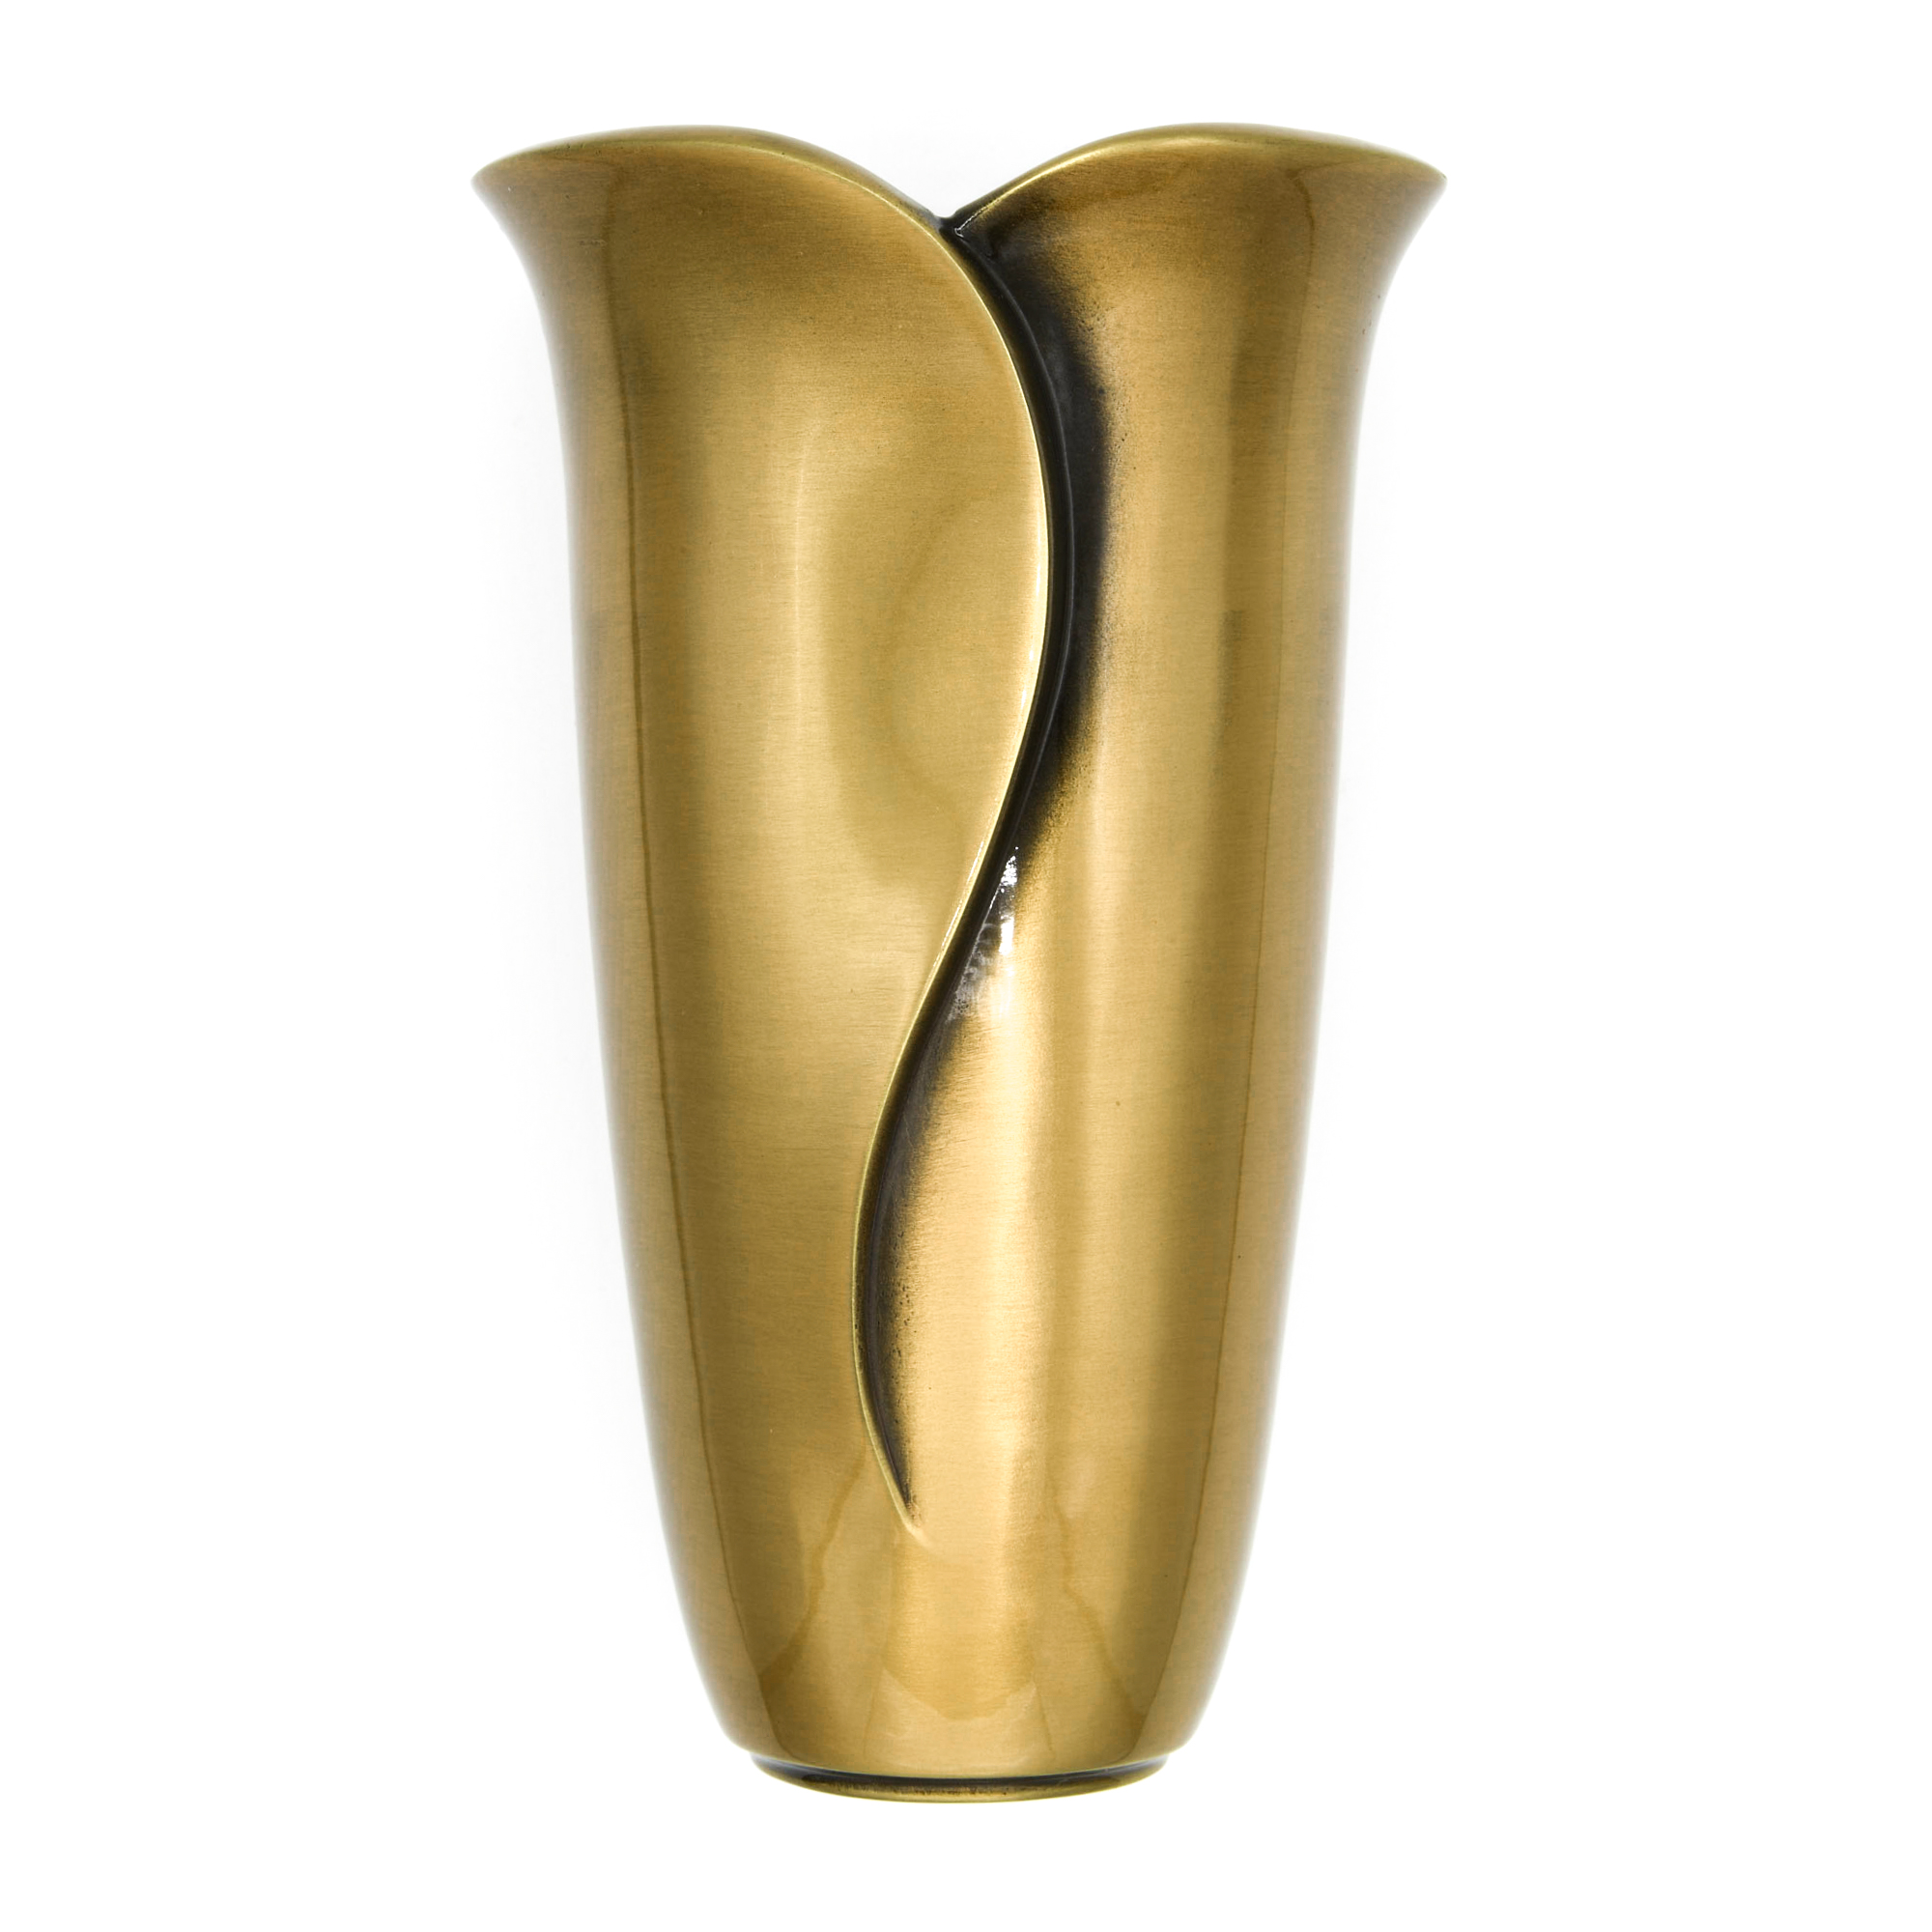 Elegance Vase – remov. ins. 4.7″ x 7.8″